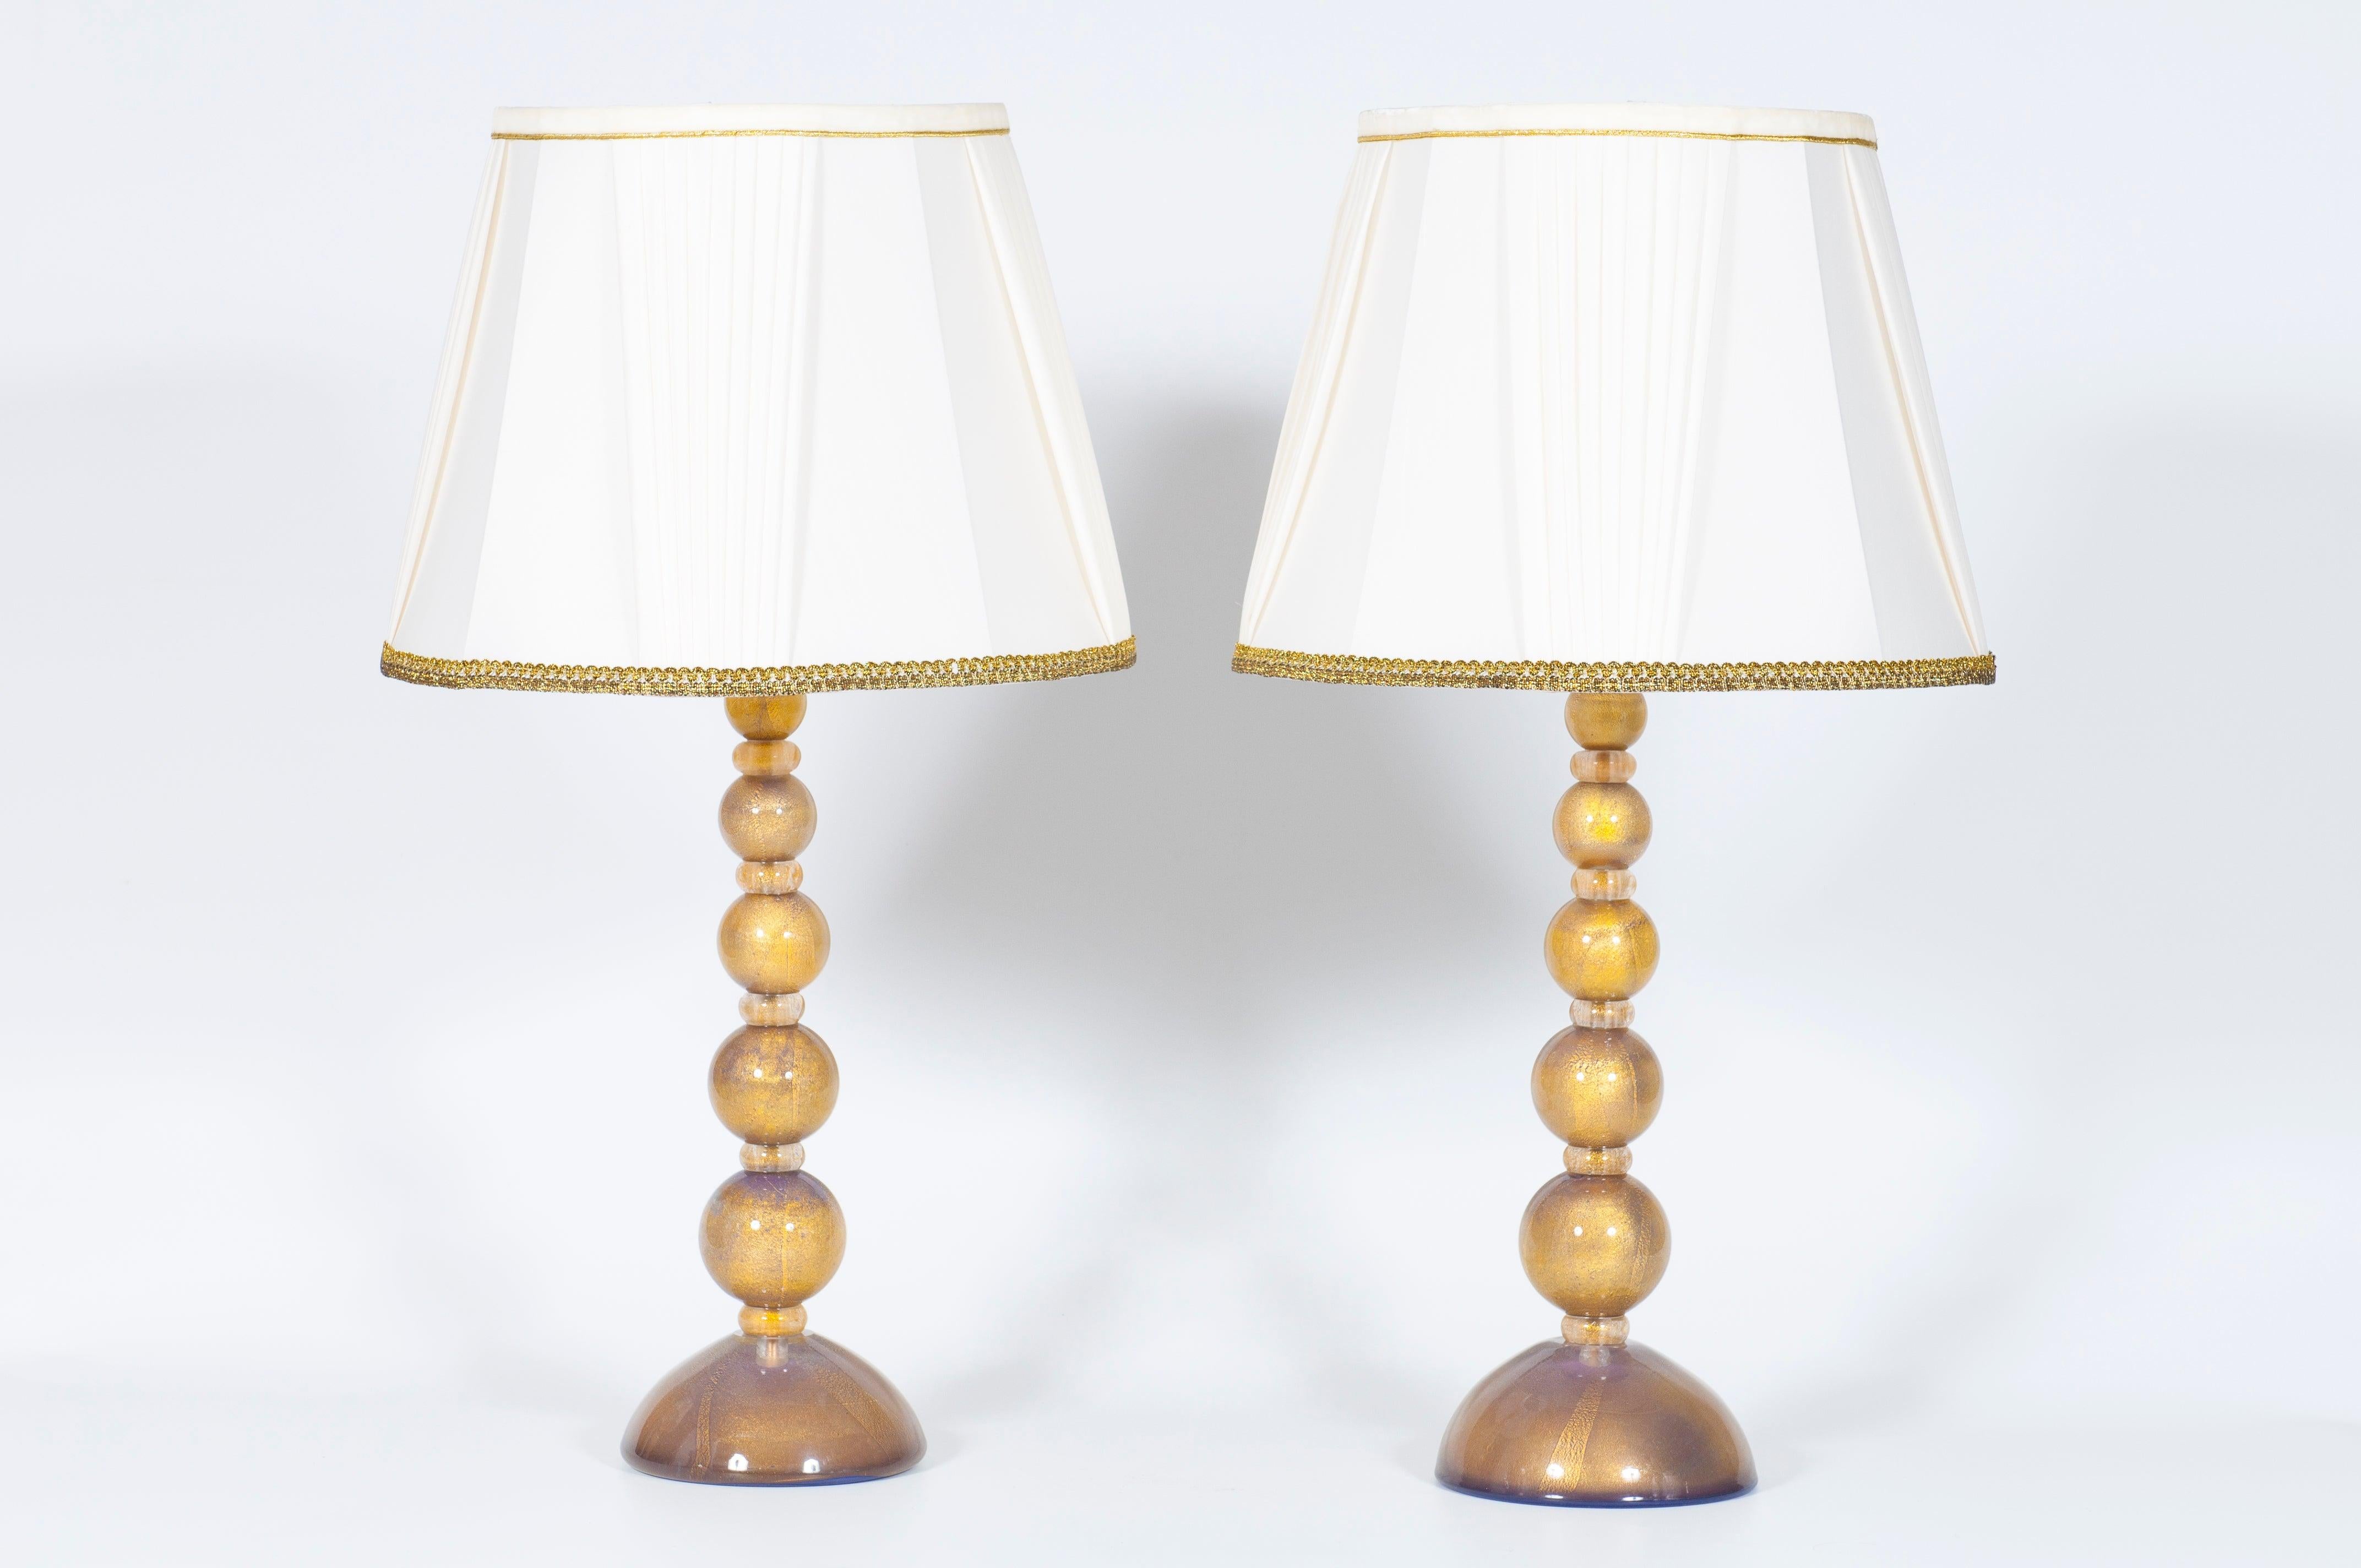 Ein Paar exquisite Murano Glas Tischlampen mit lila und Gold Akzente, italienisches Design aus den 2000er Jahren.
Dieses außergewöhnliche Paar Tischlampen, das vollständig aus mundgeblasenem Murano-Glas handgefertigt ist, verkörpert die